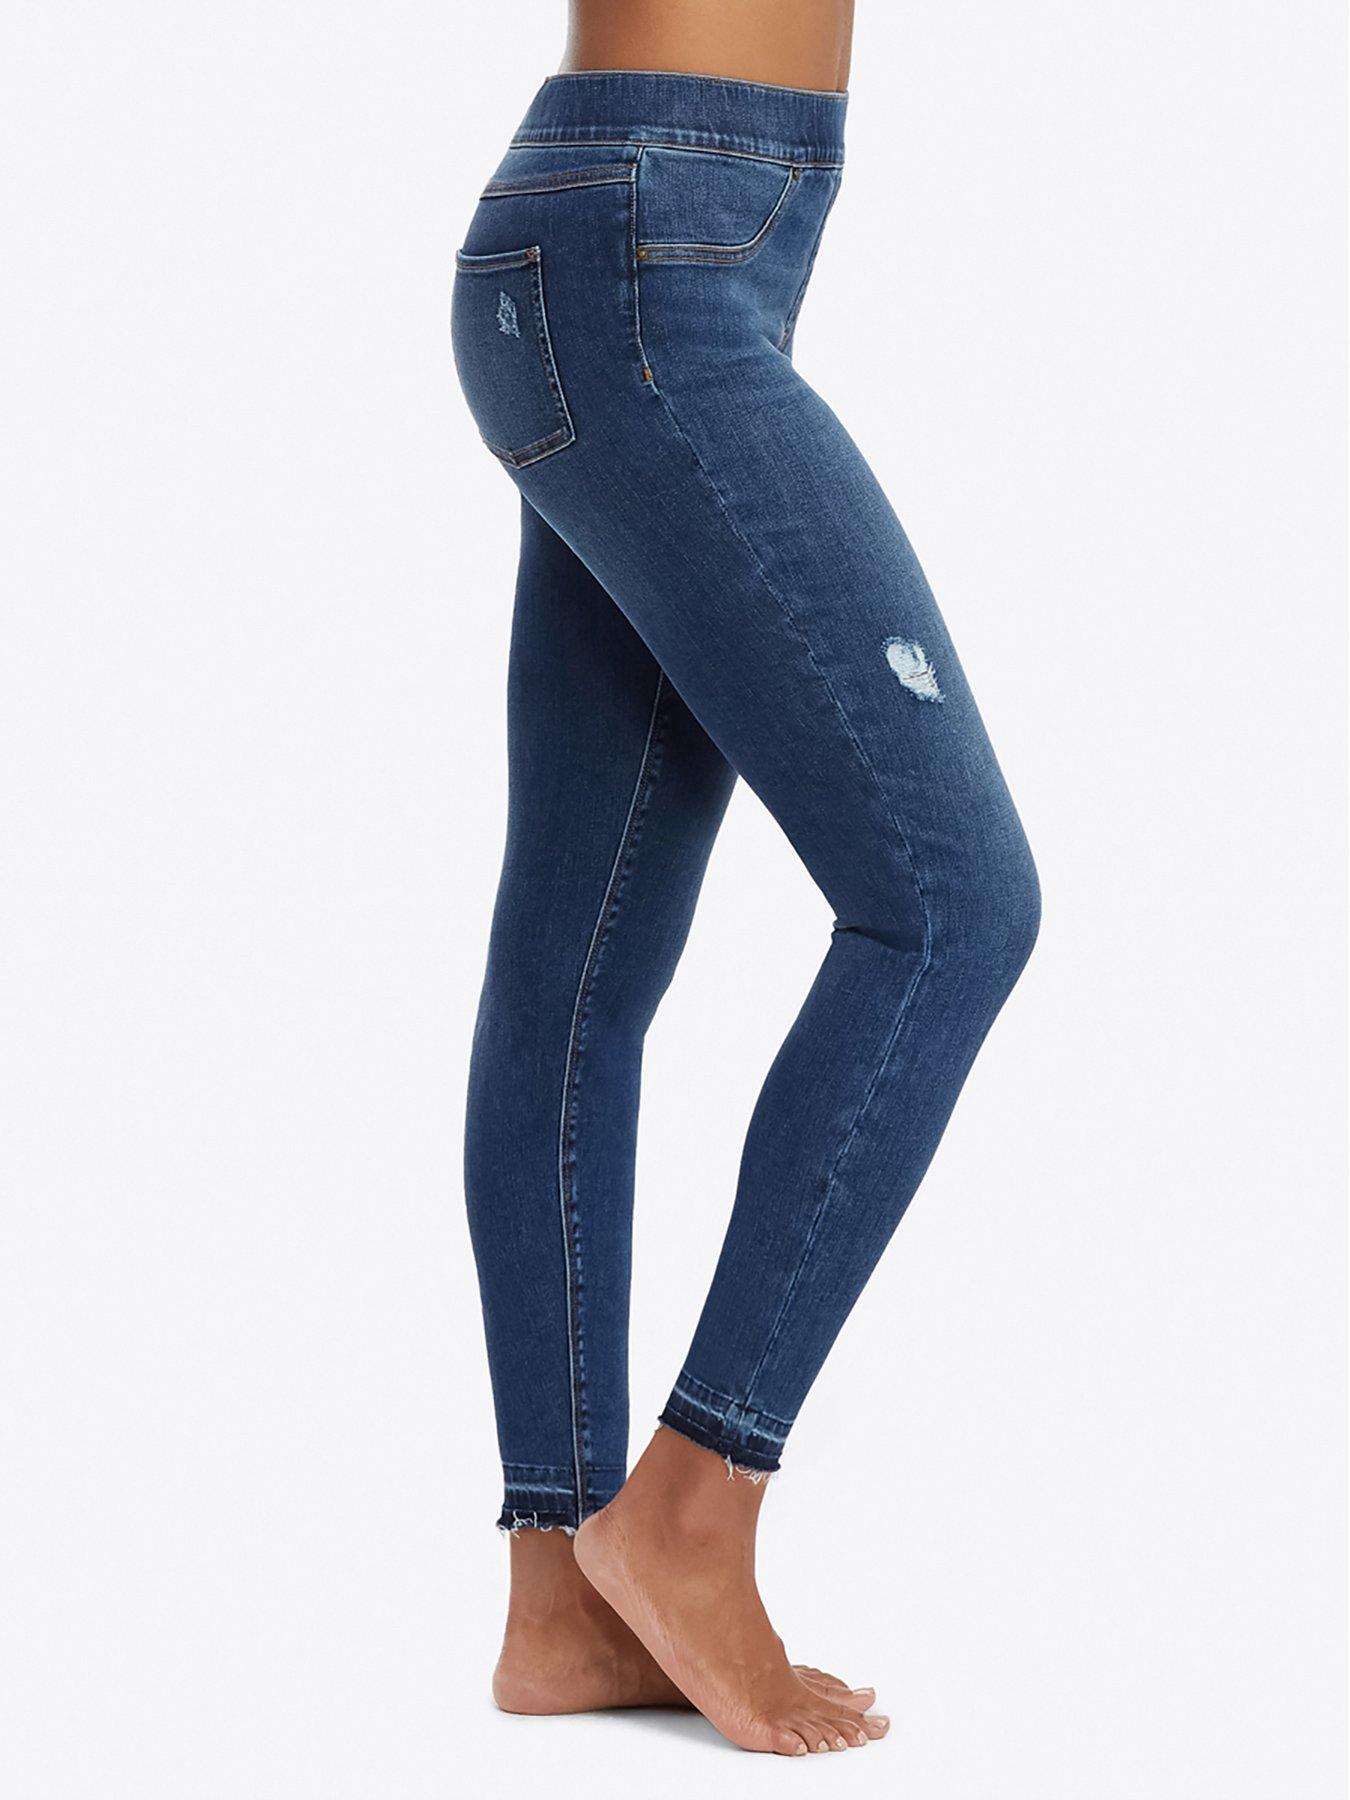 spanx jeans ireland